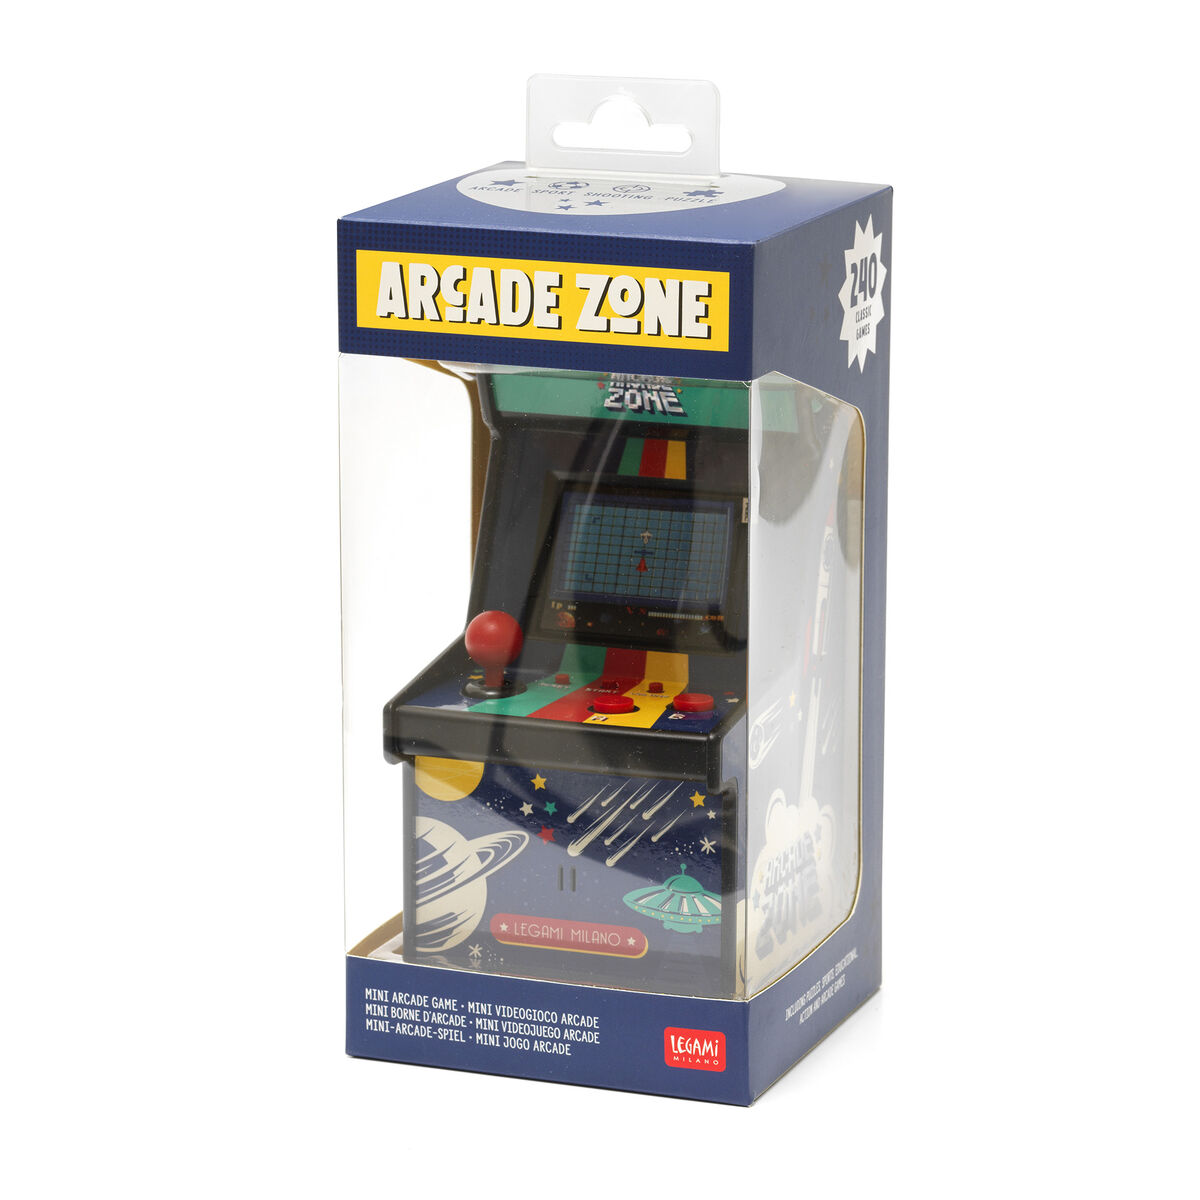 Mini Videojuego Arcade - Arcade Zone, , zoo